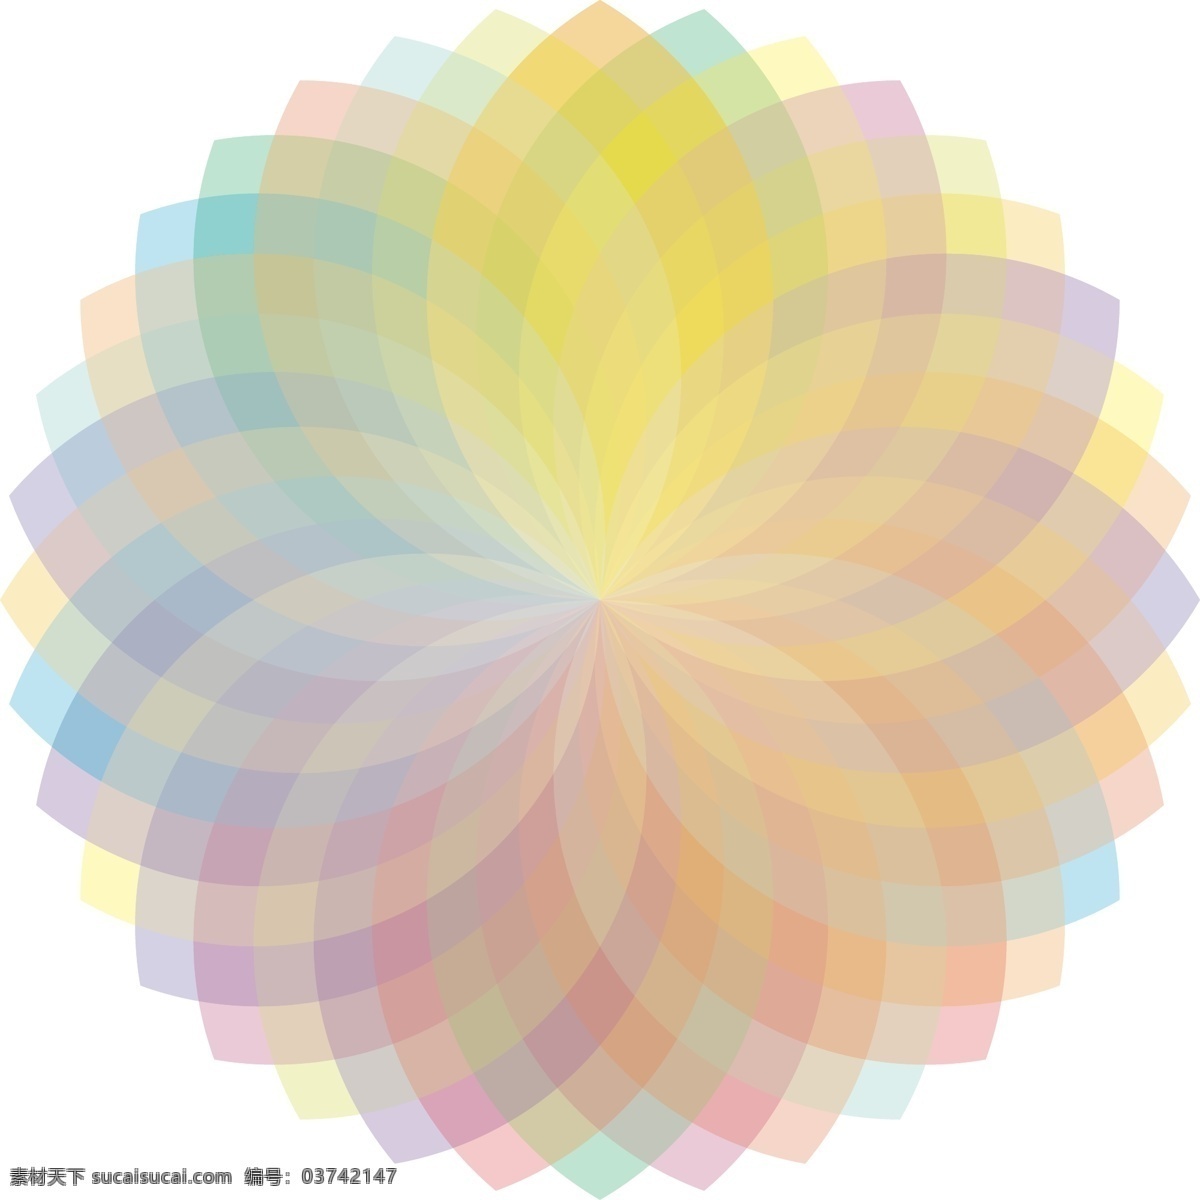 旋转 复制 打造 炫丽 彩色 光谱 图 彩色光谱图 圆形花 色彩